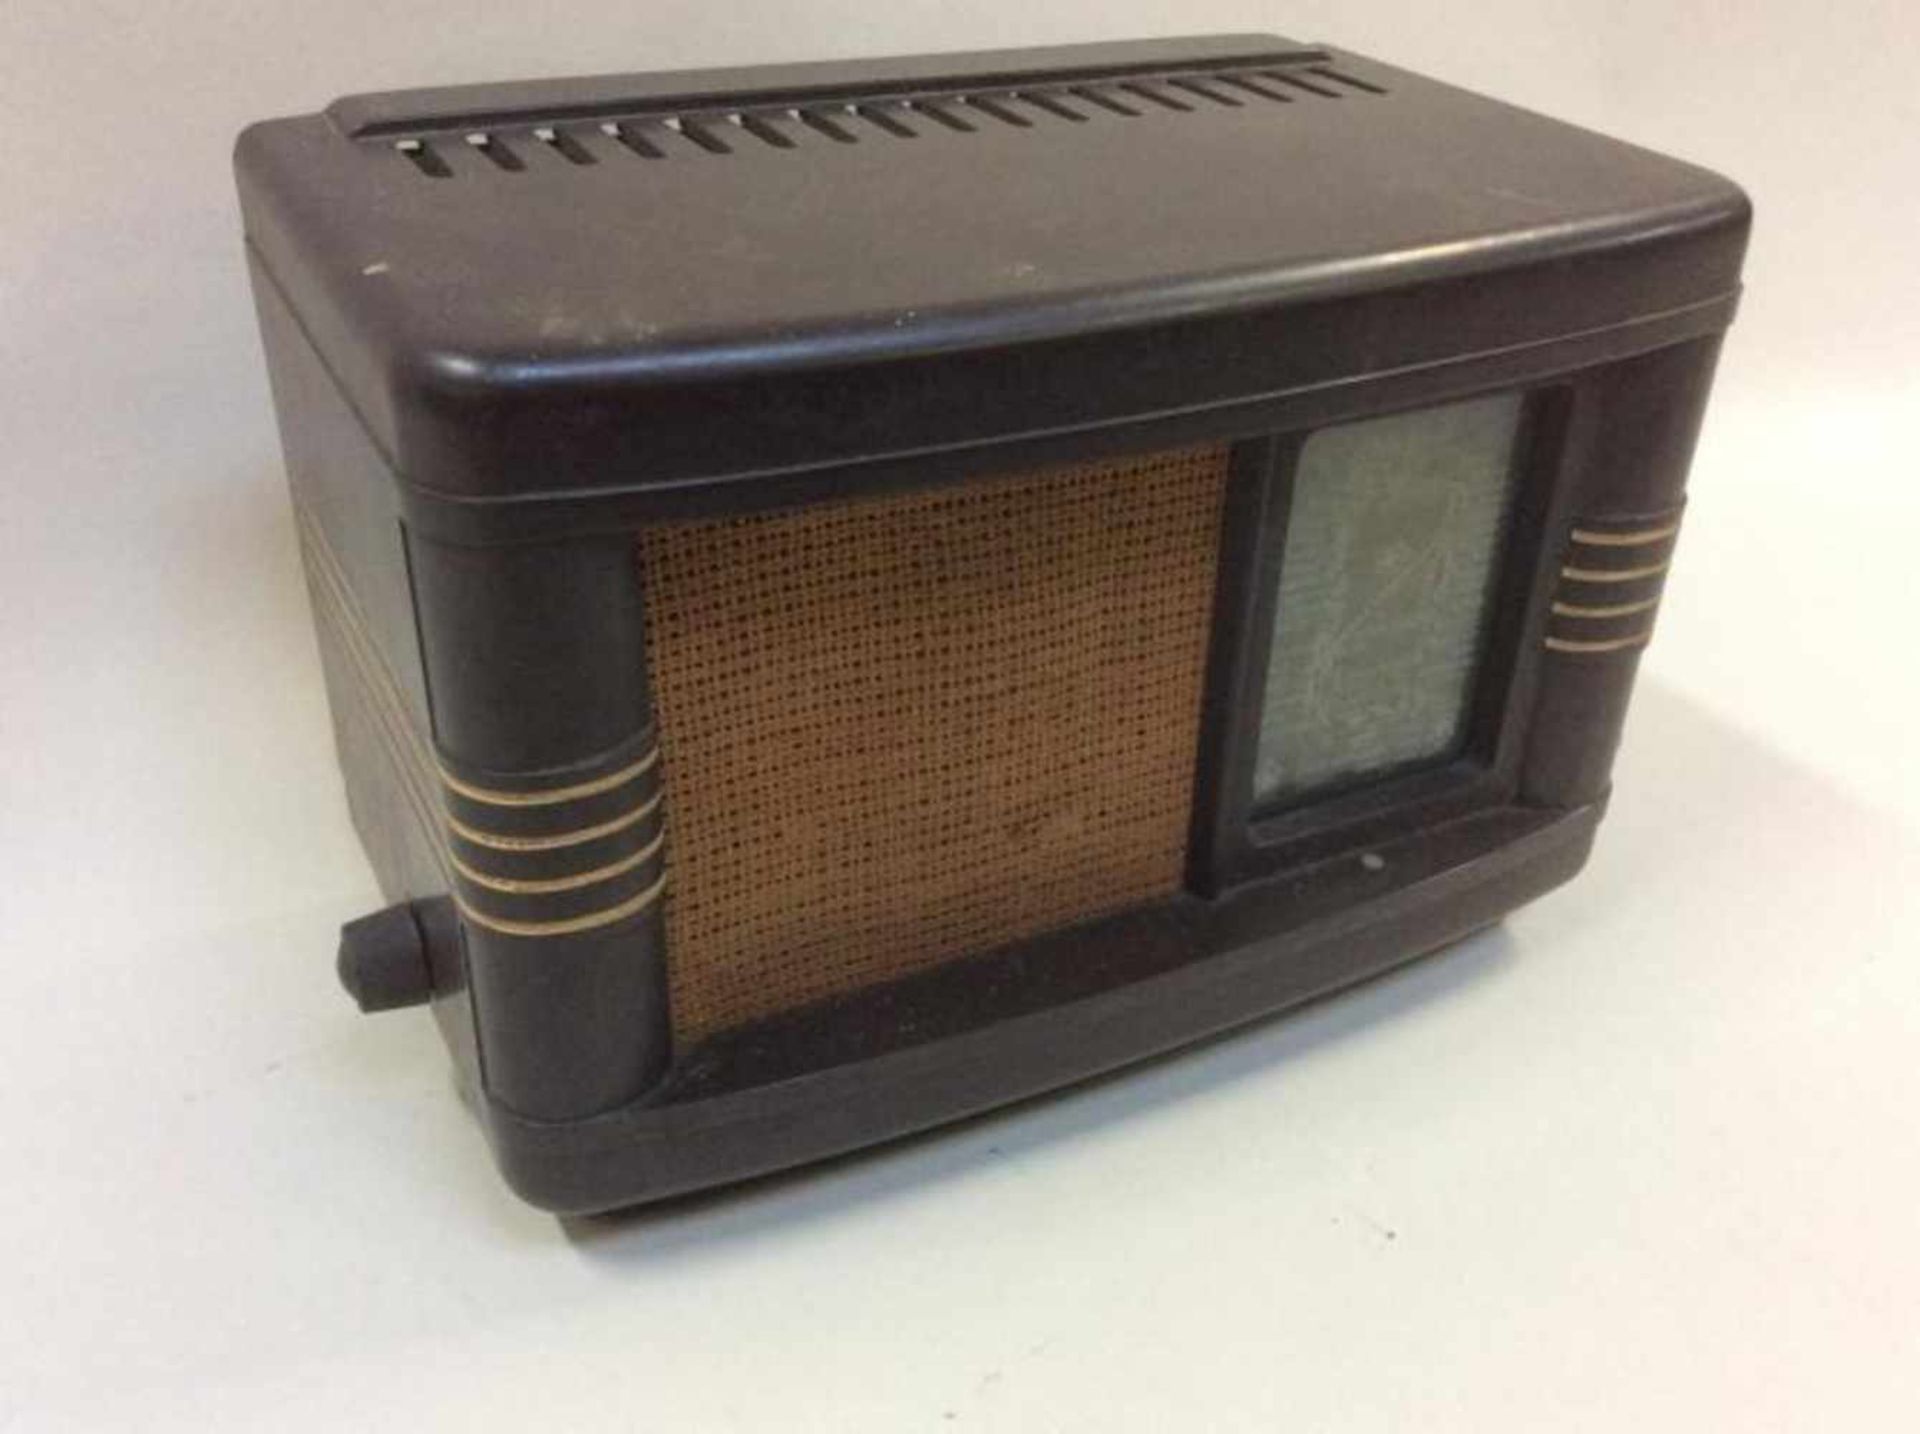 Philips radio H208u-45p (in bakeliet?)